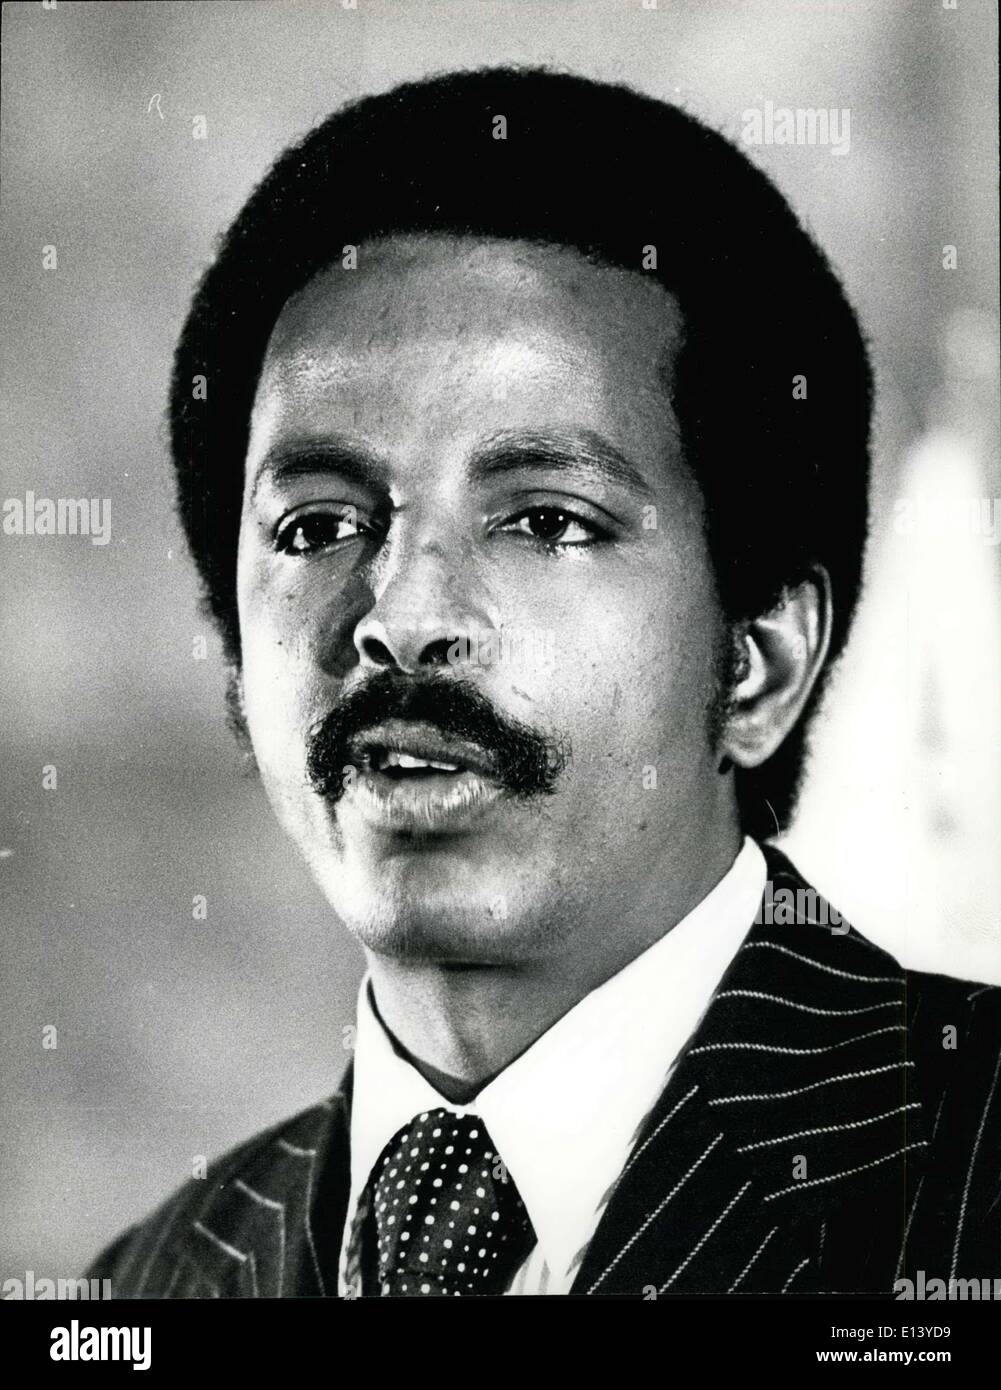 31 mars 2012 - ''Crédits Camerapix'' Hussein A. Qassim. Ministre des ressources minières et de l'eau .Oftens agit comme porte-parole officiel du Gouvernement somalien. Banque D'Images